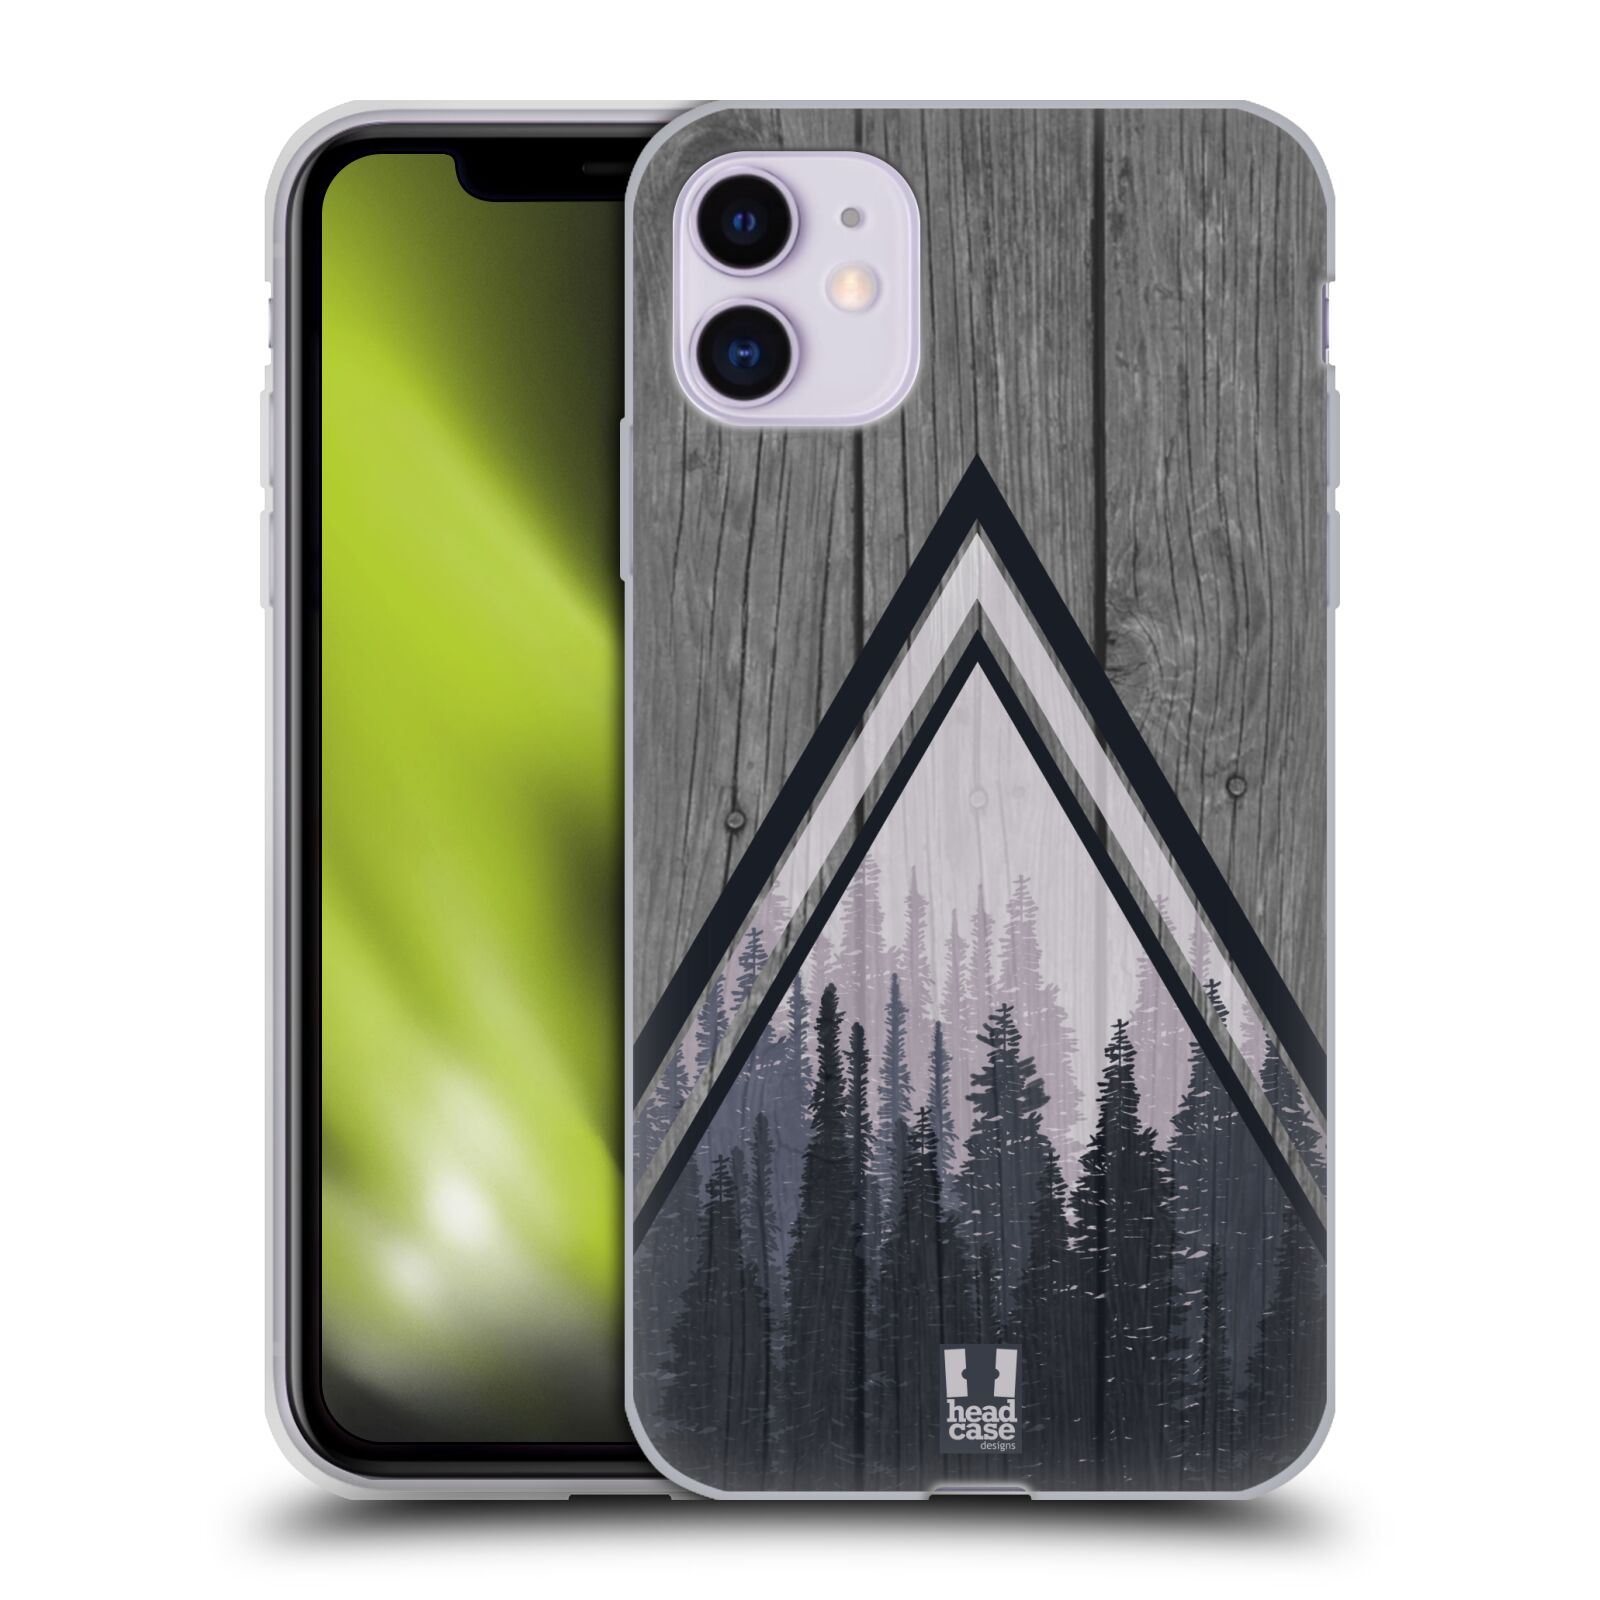 Silikonové pouzdro na mobil Apple iPhone 11 - Head Case - Dřevo a temný les (Silikonový kryt, obal, pouzdro na mobilní telefon Apple iPhone 11 s displejem 6,1" s motivem Dřevo a temný les)